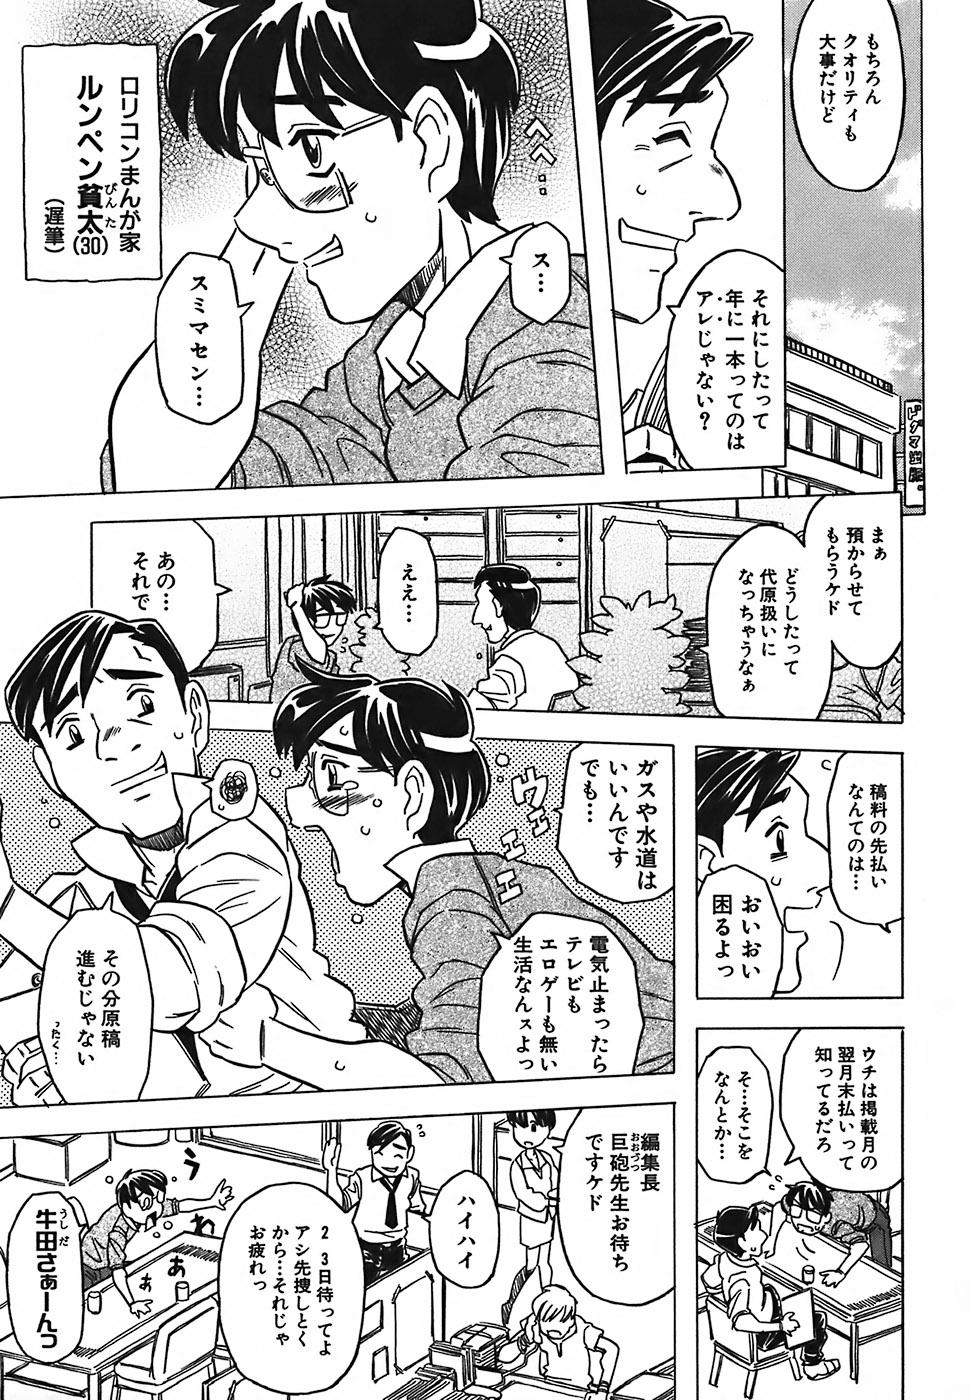 Leite Cannon Sensei Tobashisugi Putaria - Page 9